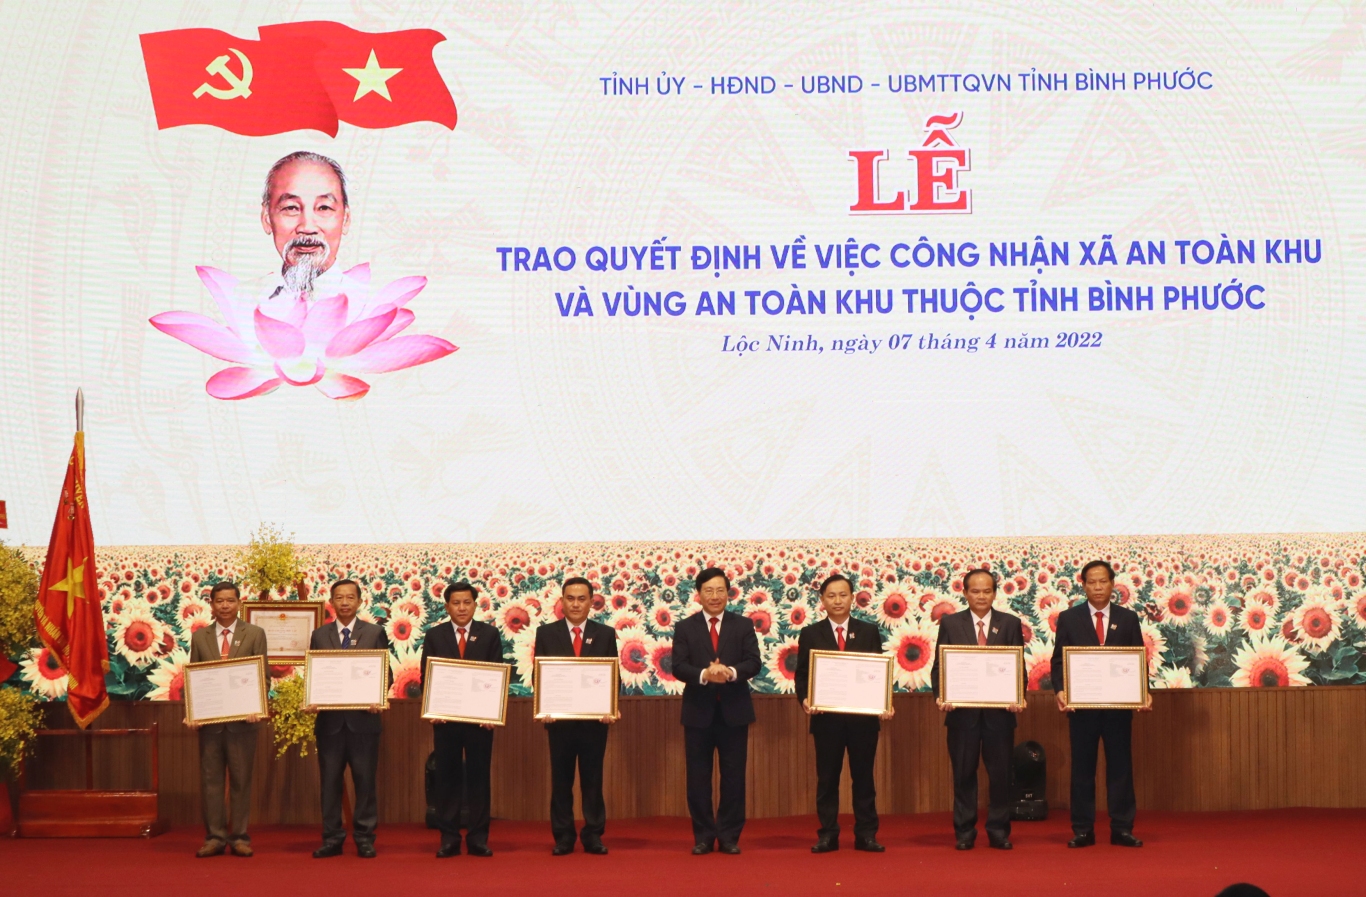 Và trao quyết định của Thủ tướng Chính phủ về công nhận 6 xã, thị trấn An toàn khu và huyện Lộc Ninh là vùng An toàn khu thời kỳ kháng chiến chống Mỹ